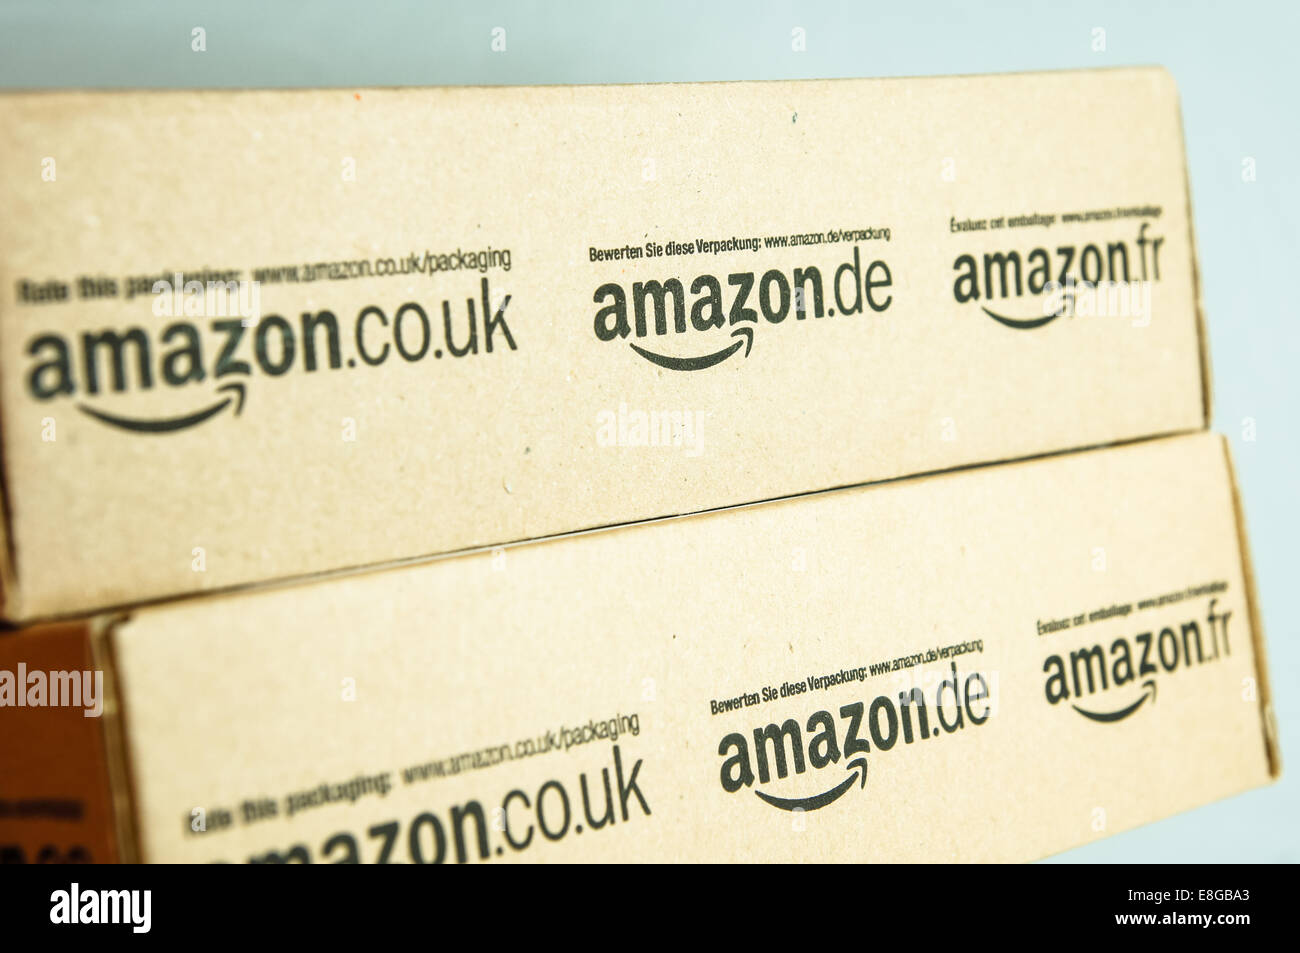 Amazon logo logos on boxes, amazon boxes Stock Photo - Alamy